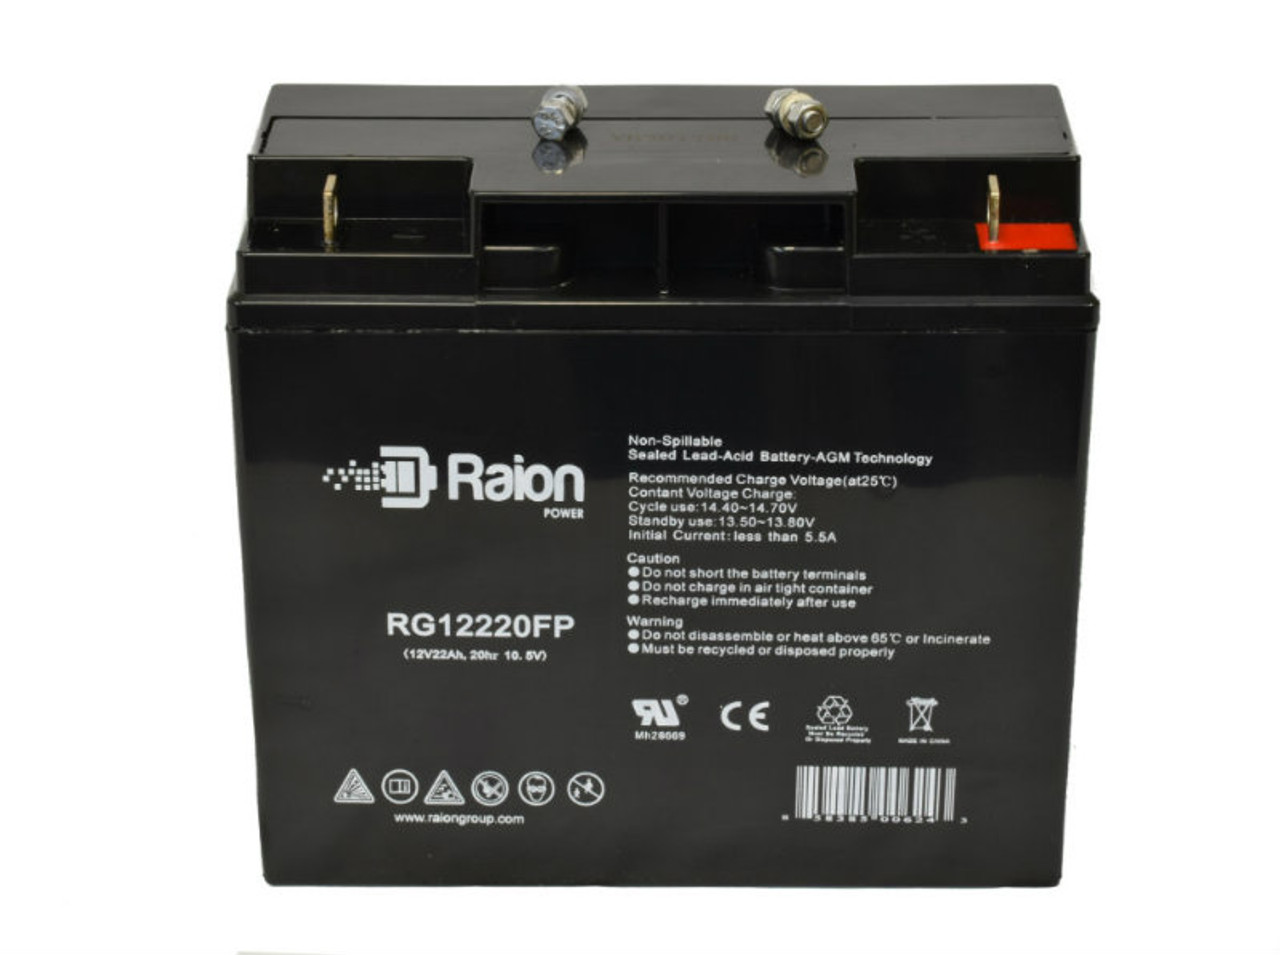 Raion Power RG12220FP 12V 22Ah AGM Battery for Stanley J509 500 Instant 1000 Peak Amp